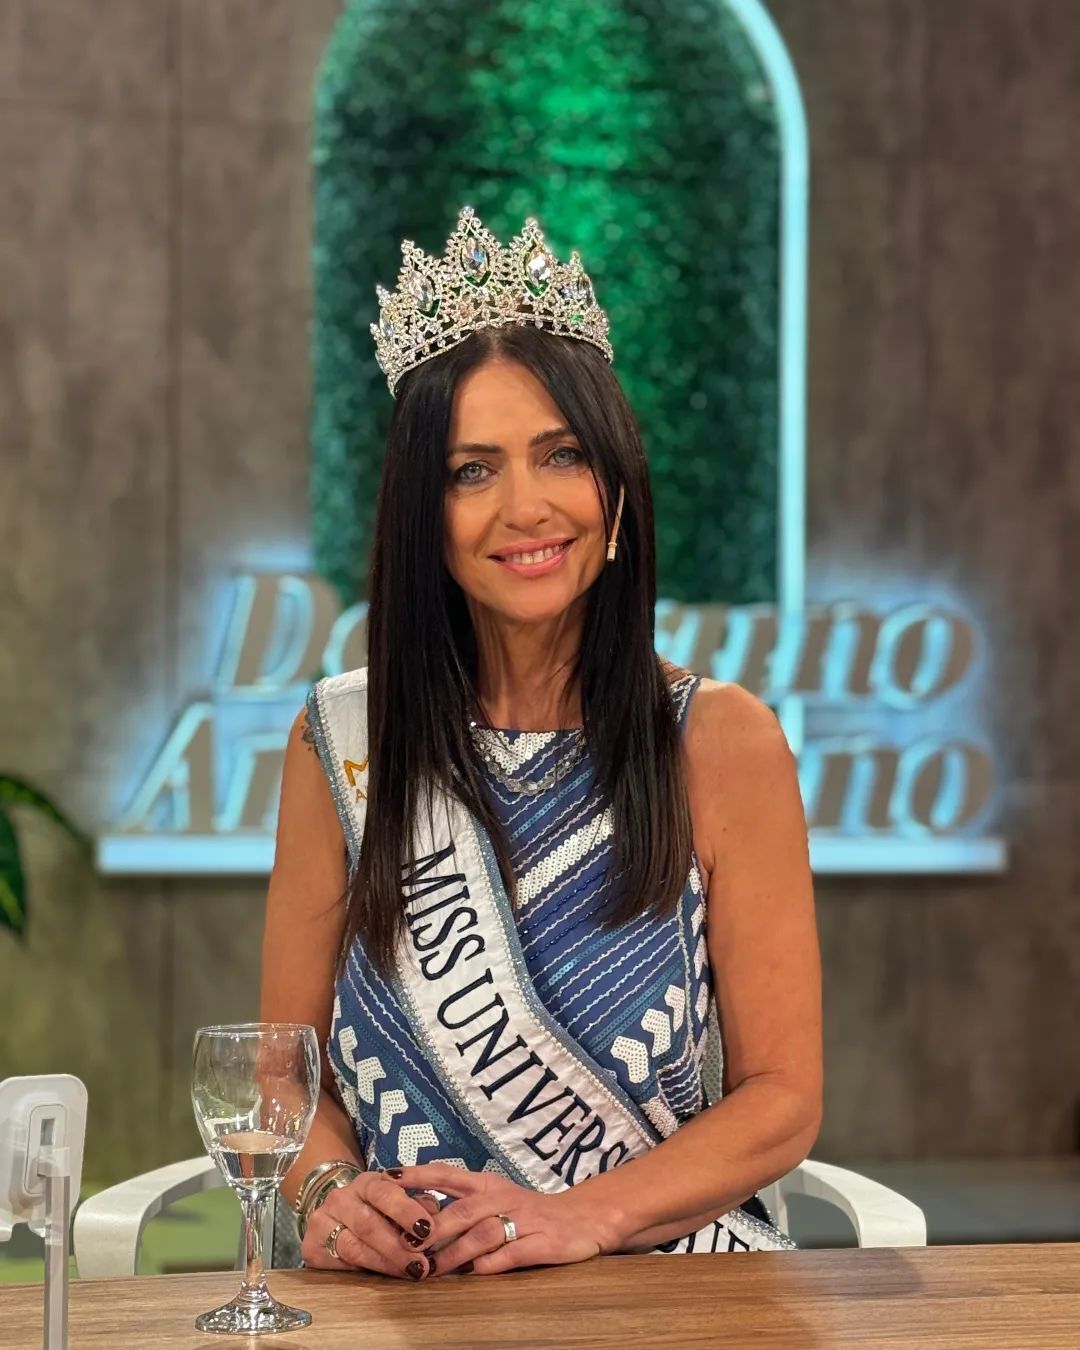 "Мисс Вселенная Буэнос-Айрес" Алехандра Родригес, которая в 60 лет выглядит максимум на 40, раскрыла свой секрет успеха и показала фото в купальнике